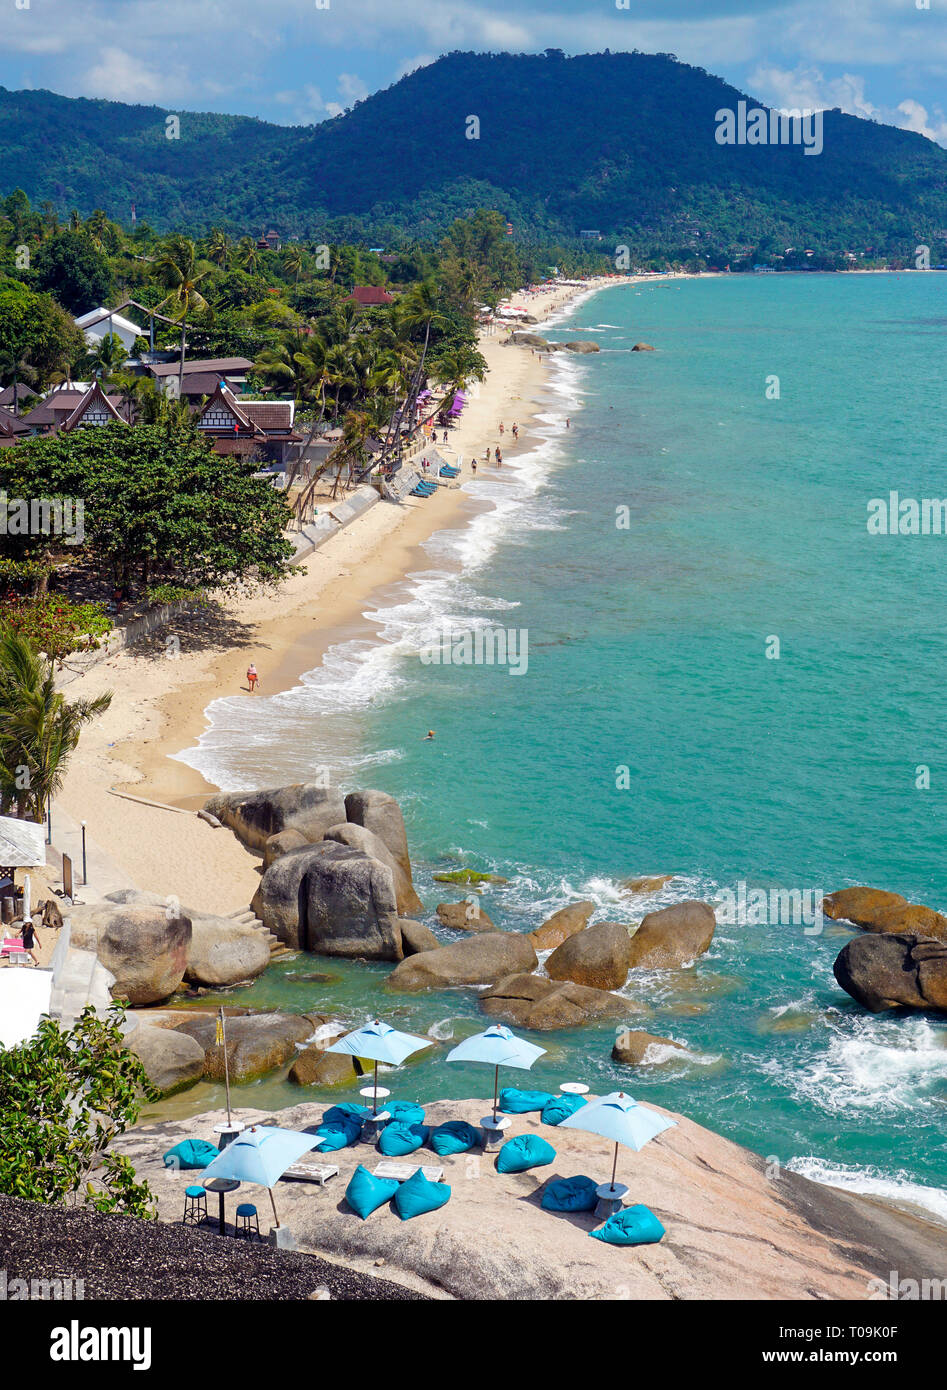 Der Lamai Strand auf Koh Samui, Golf von Thailand, Thailand | Lamai Beach, overview, Koh Samui, Gulf of Thailand, Thailand Stock Photo